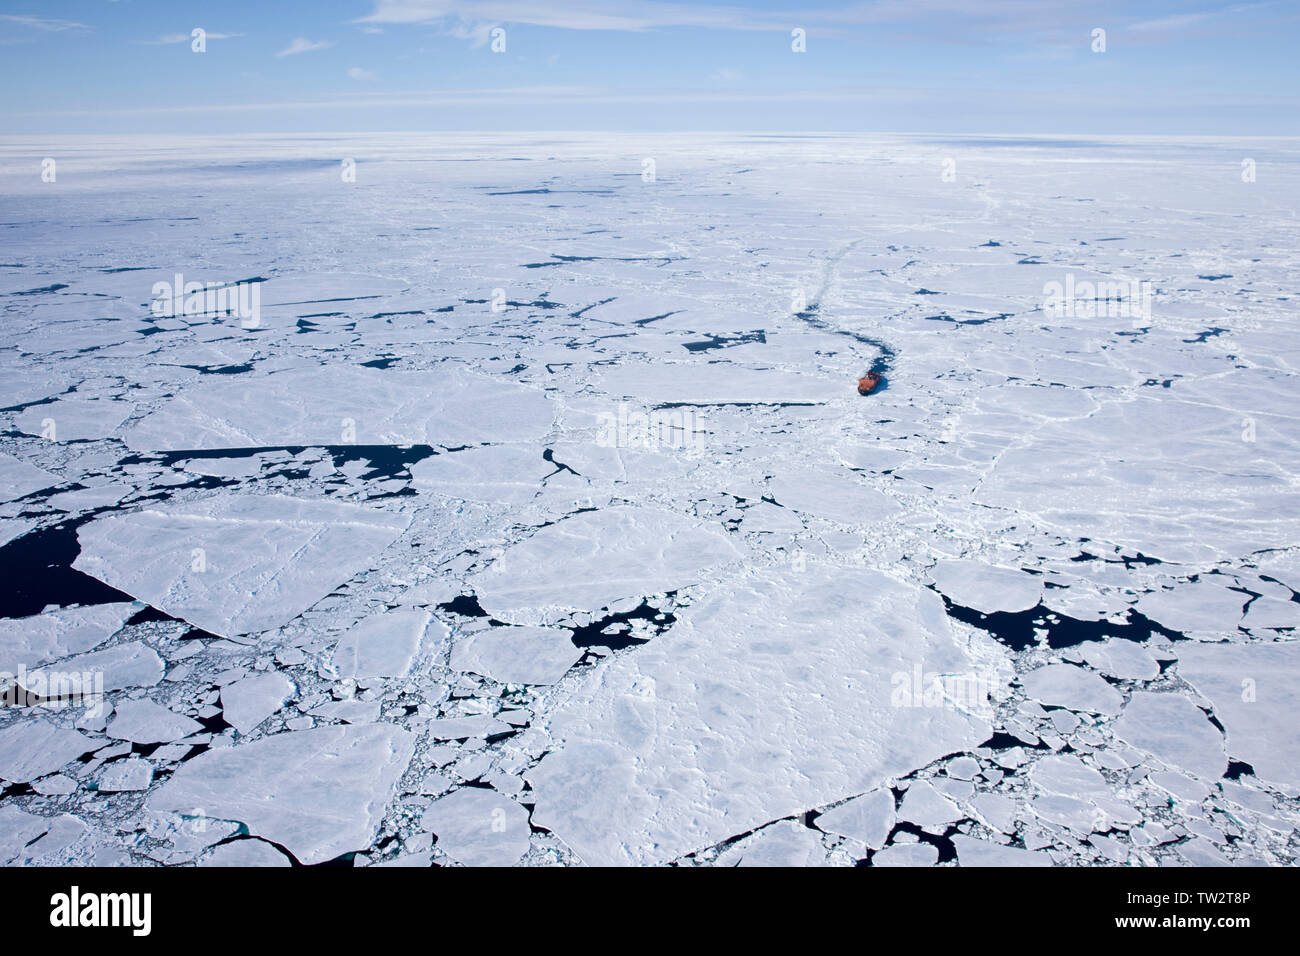 Die weltweit größte atomare Eisbrecher, 50 - Jahre der Sieg, auf dem Weg zum Nordpol. Russische Arktis. Stockfoto